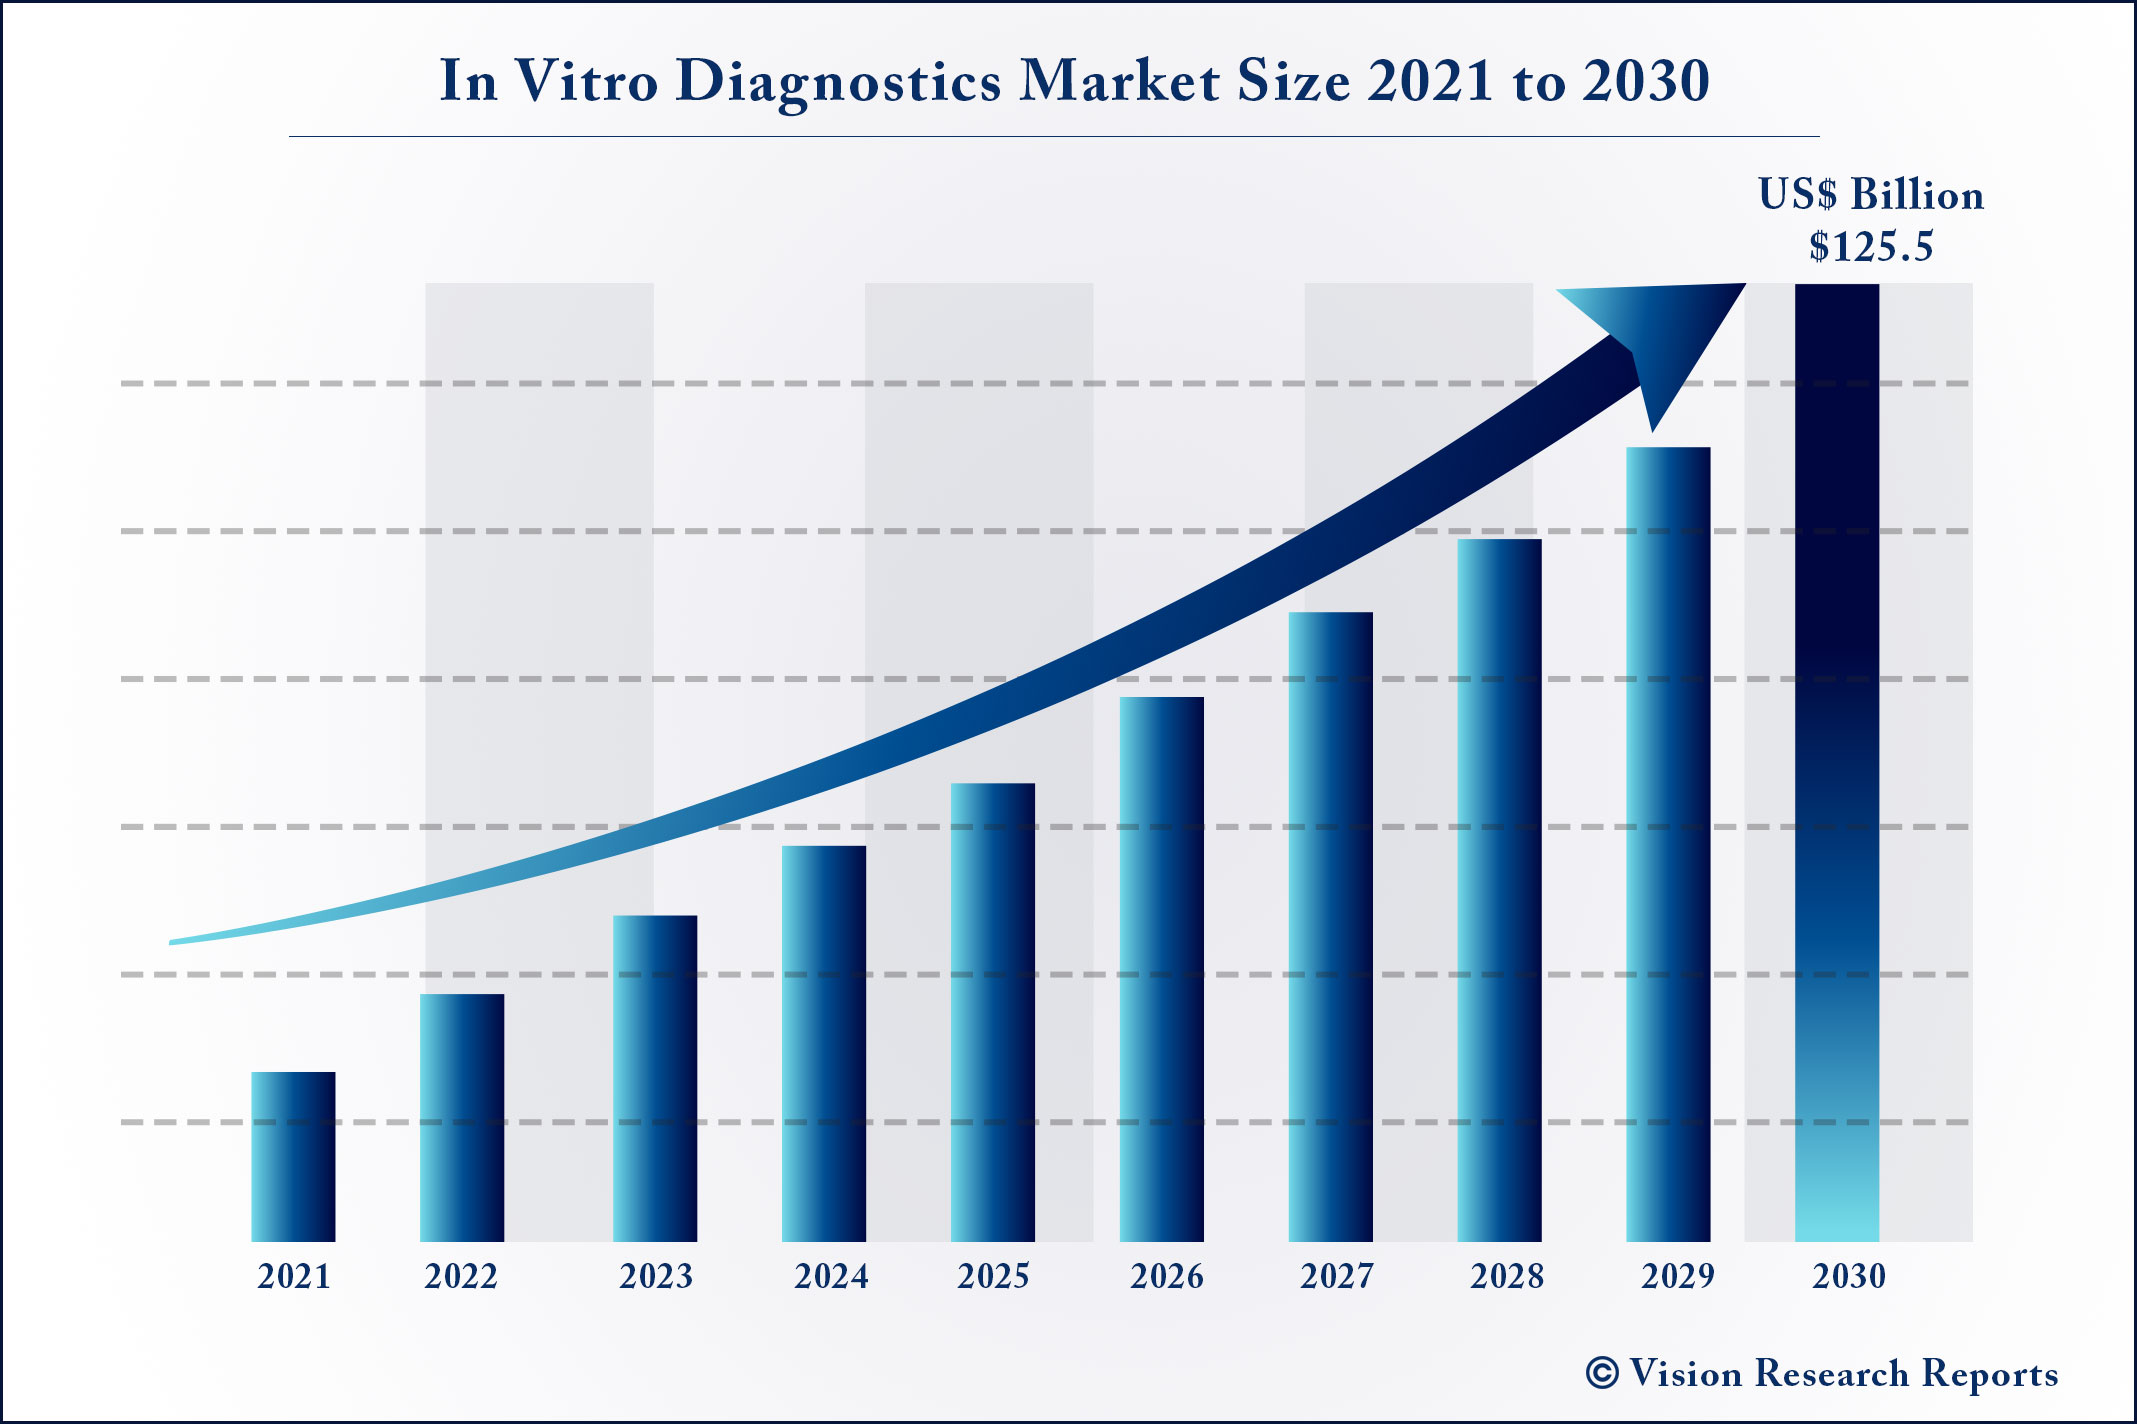 In Vitro Diagnostics Market Size 2021 to 2030